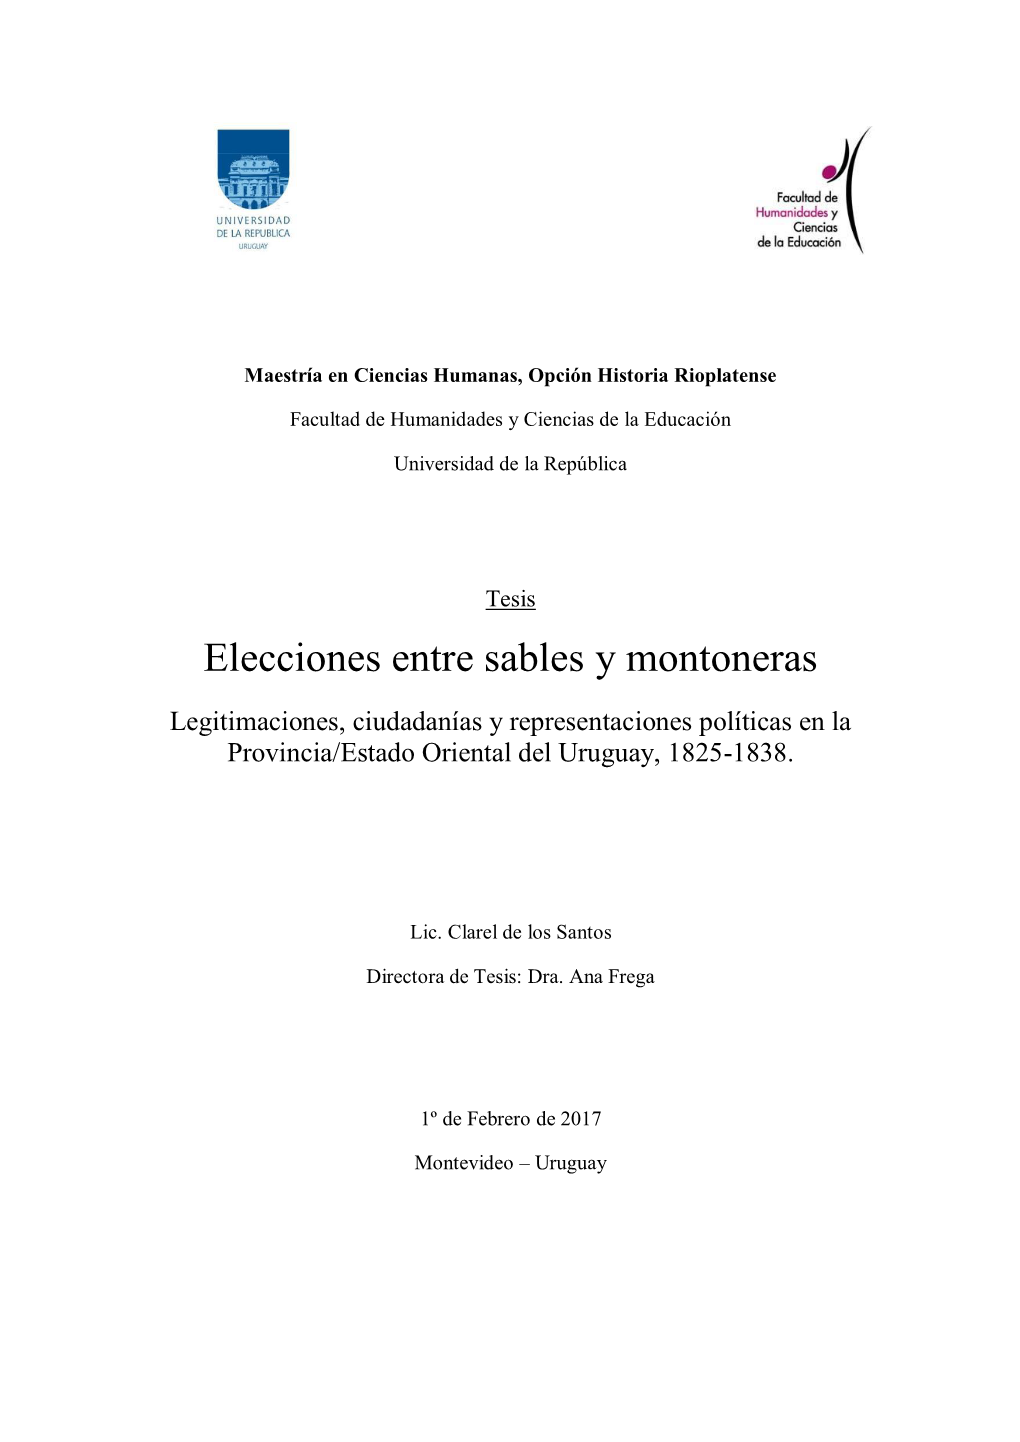 Elecciones Entre Sables Y Montoneras